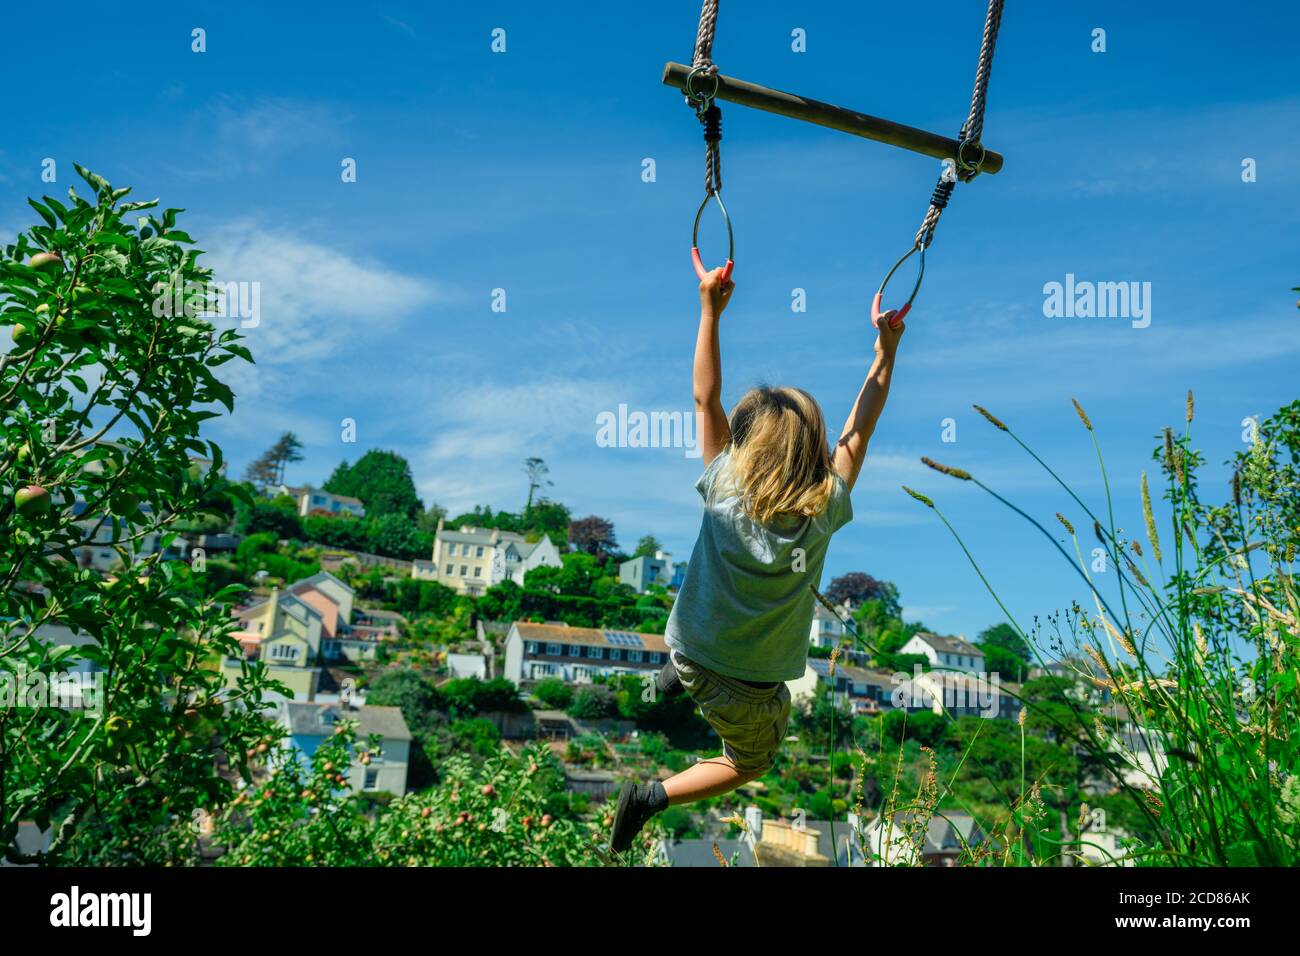 Un pré-chooler se balance d'un trapèze dans le jardin Banque D'Images